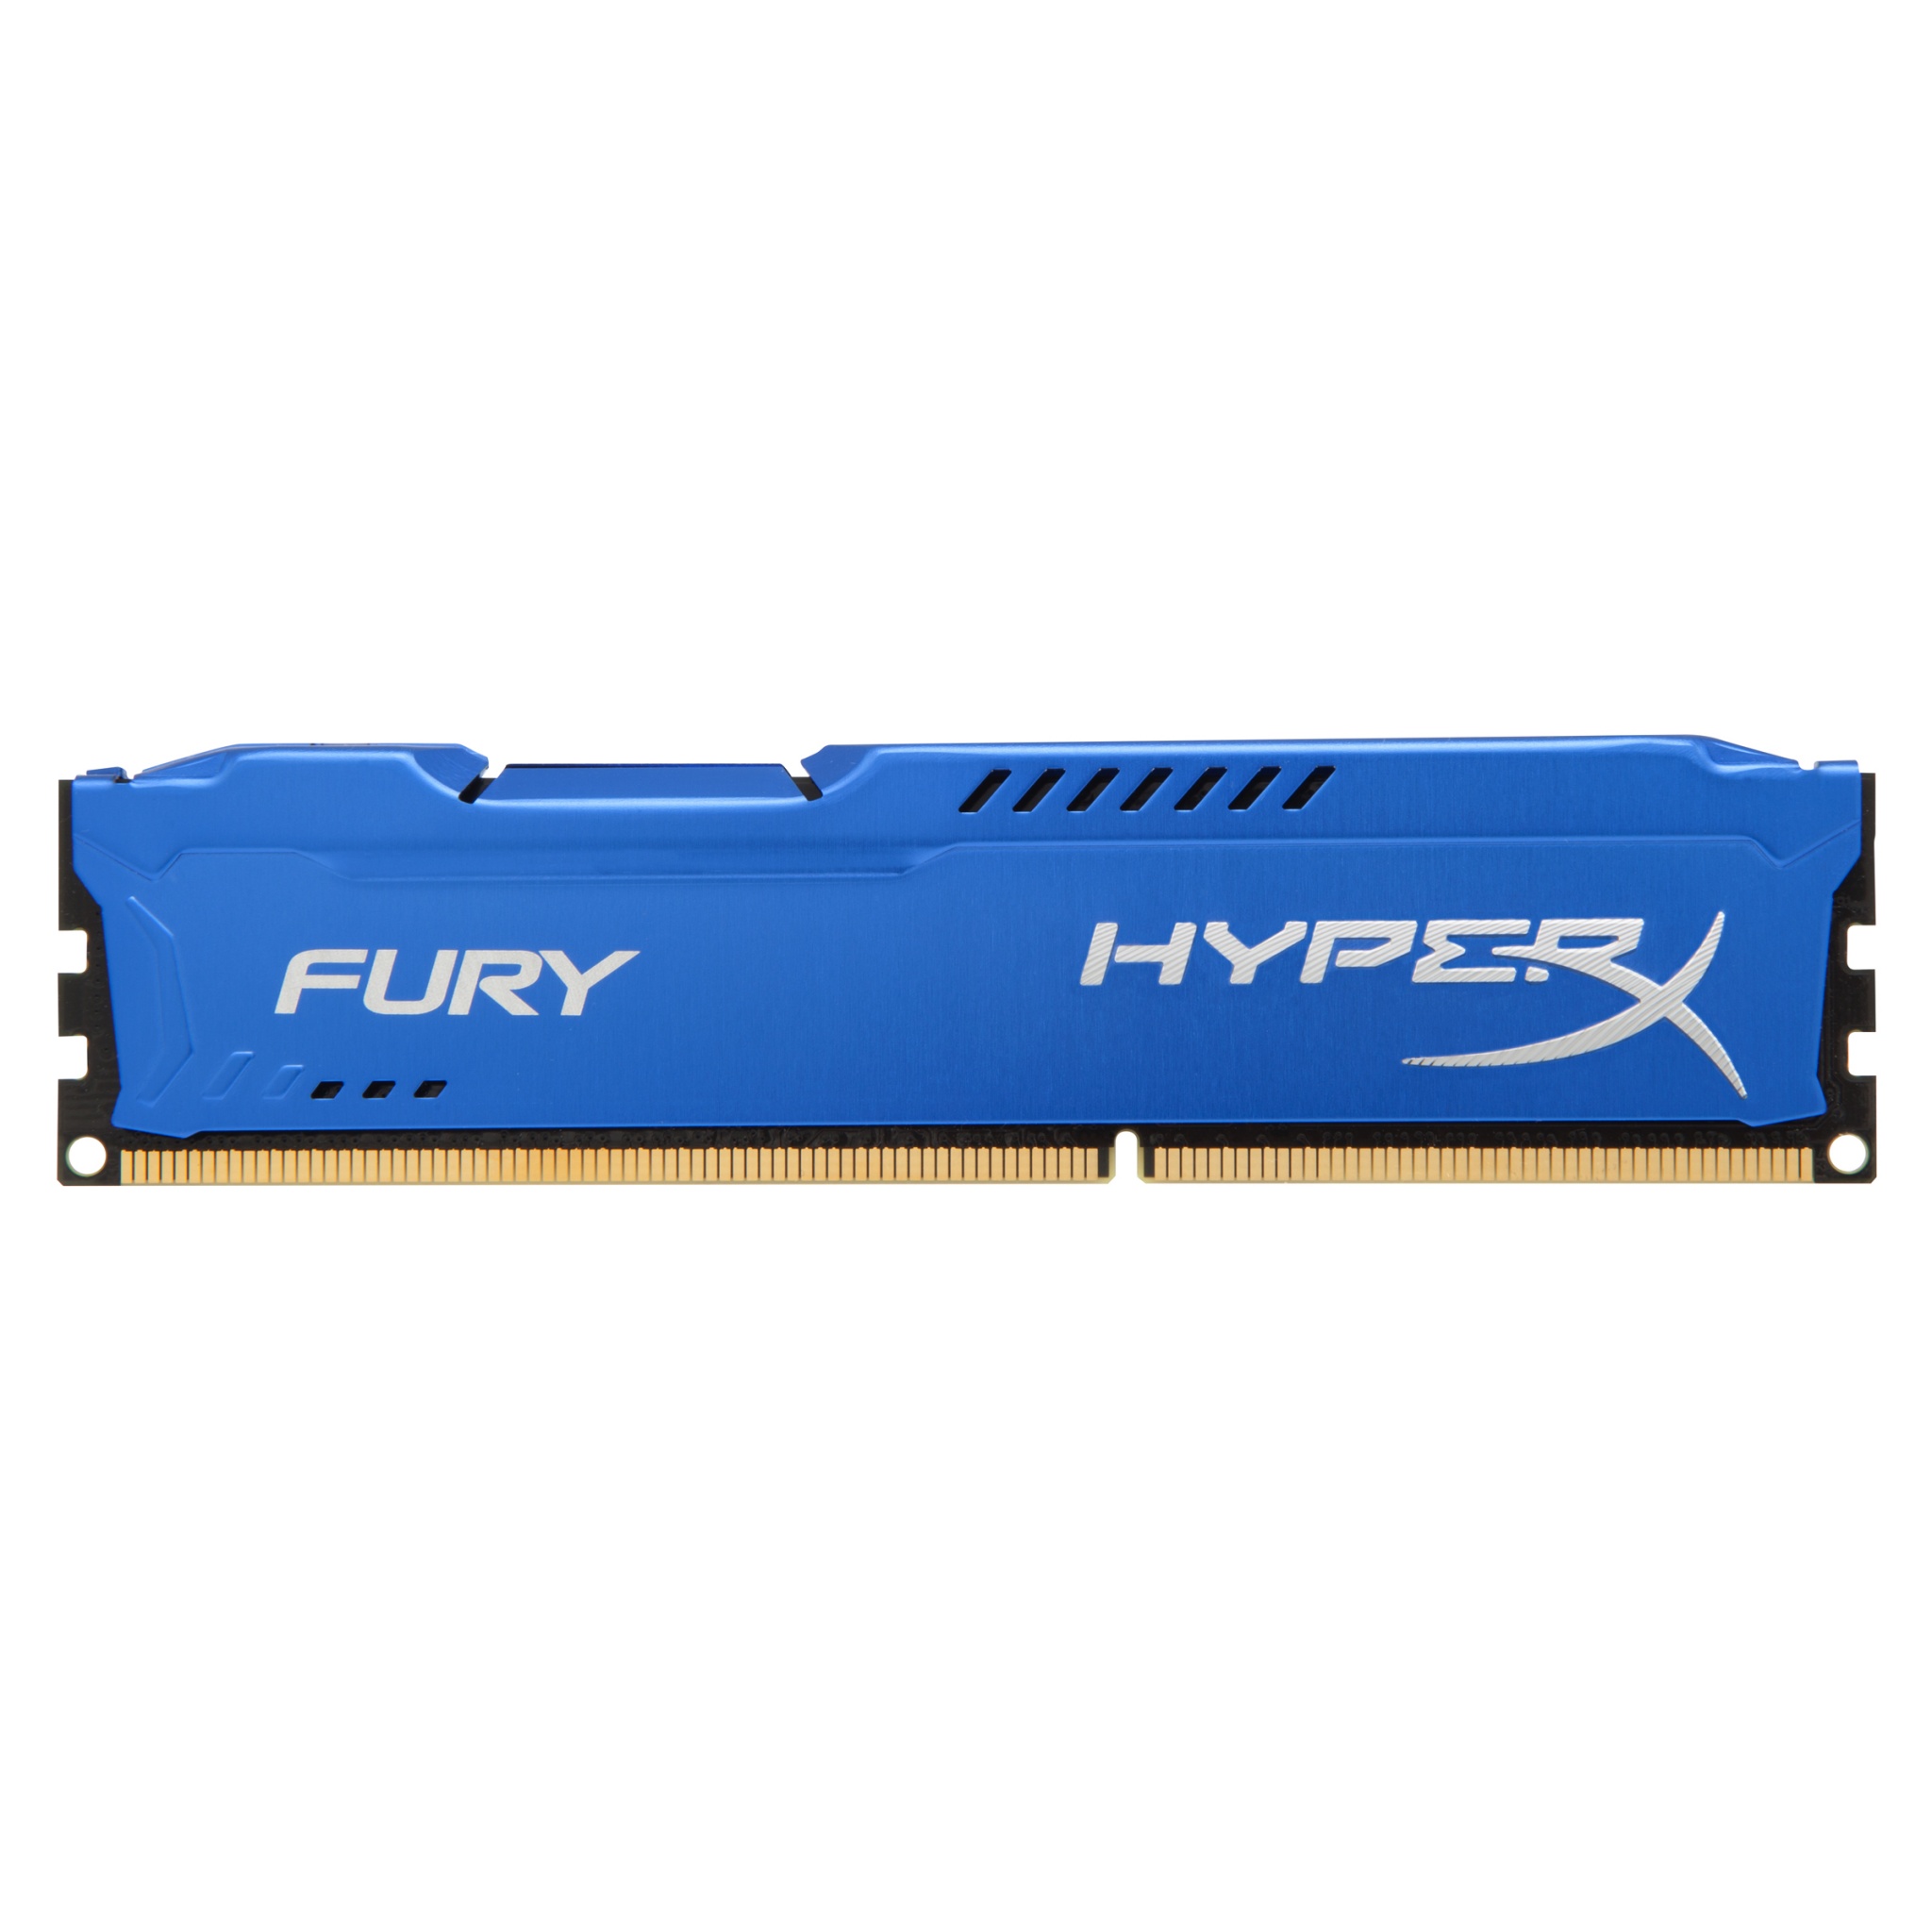 4GB Kingston HyperX Fury DDR3 Upgrade - Blue